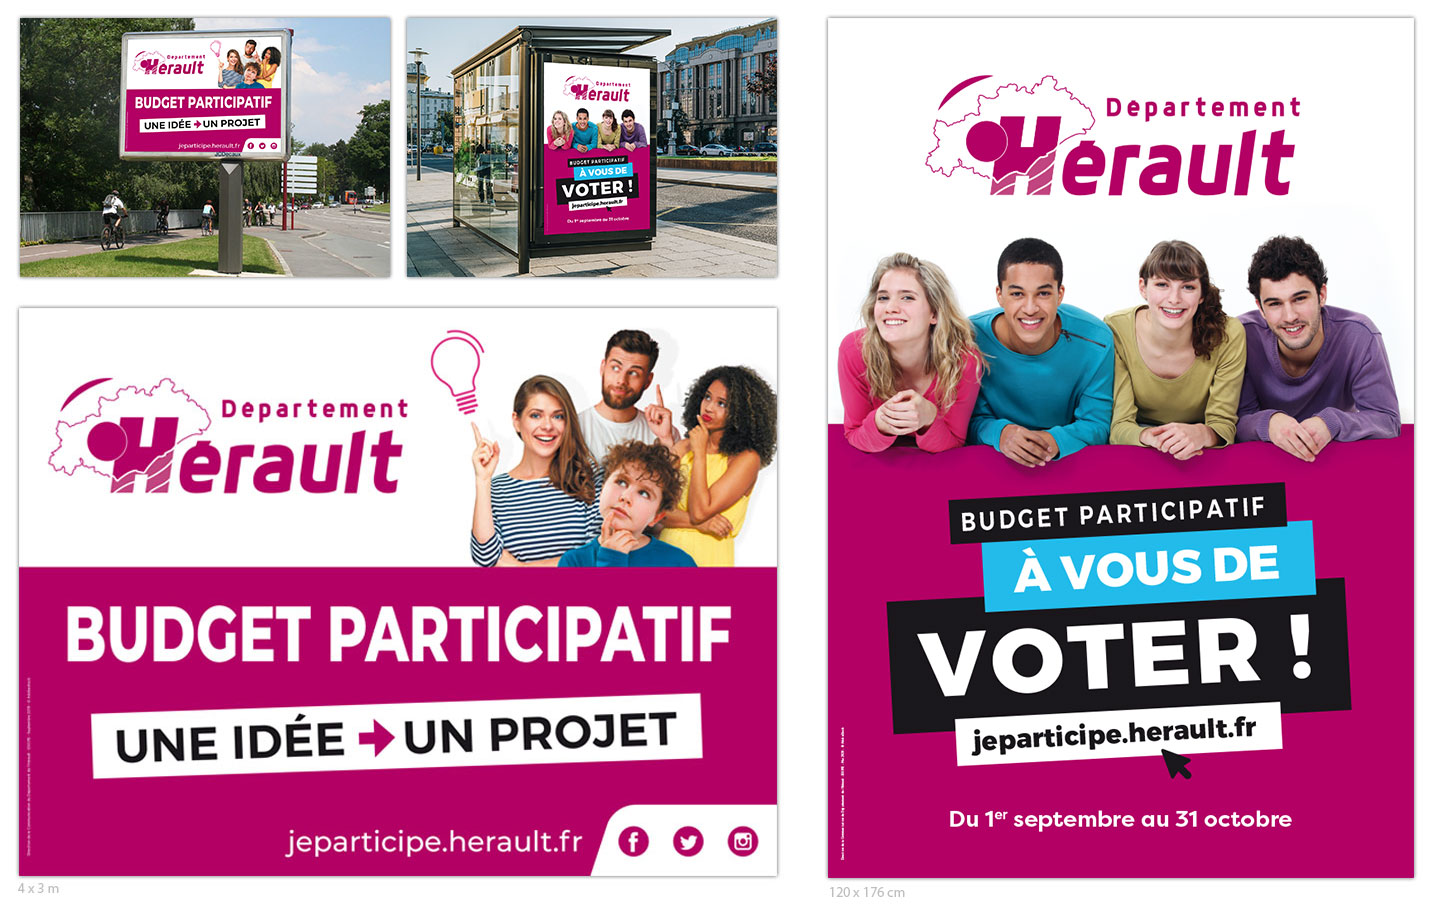 © Thierry Palau - Recherche d'une affiche sur le Buget participatif lancé par Le département de l'Hérault.